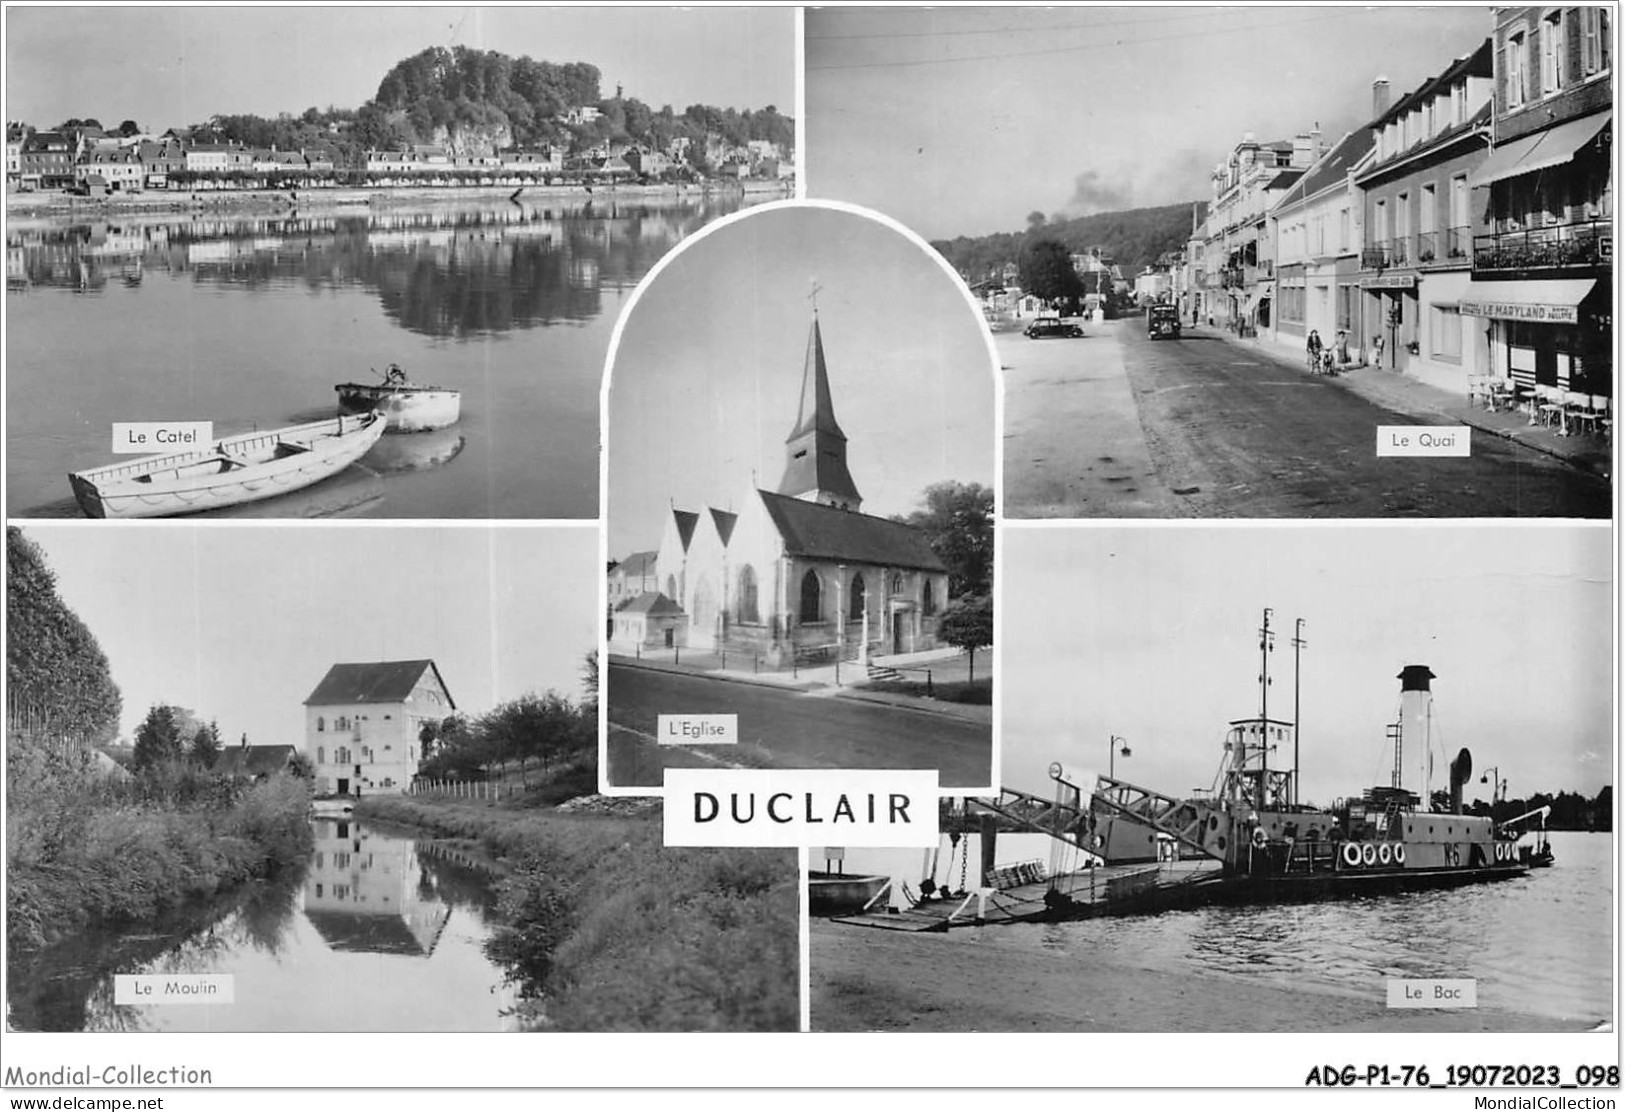 ADGP1-76-0051 - DUCLAIR - Le Catel - Le Quai - L'église - Le Moulin - Le Bac  - Duclair